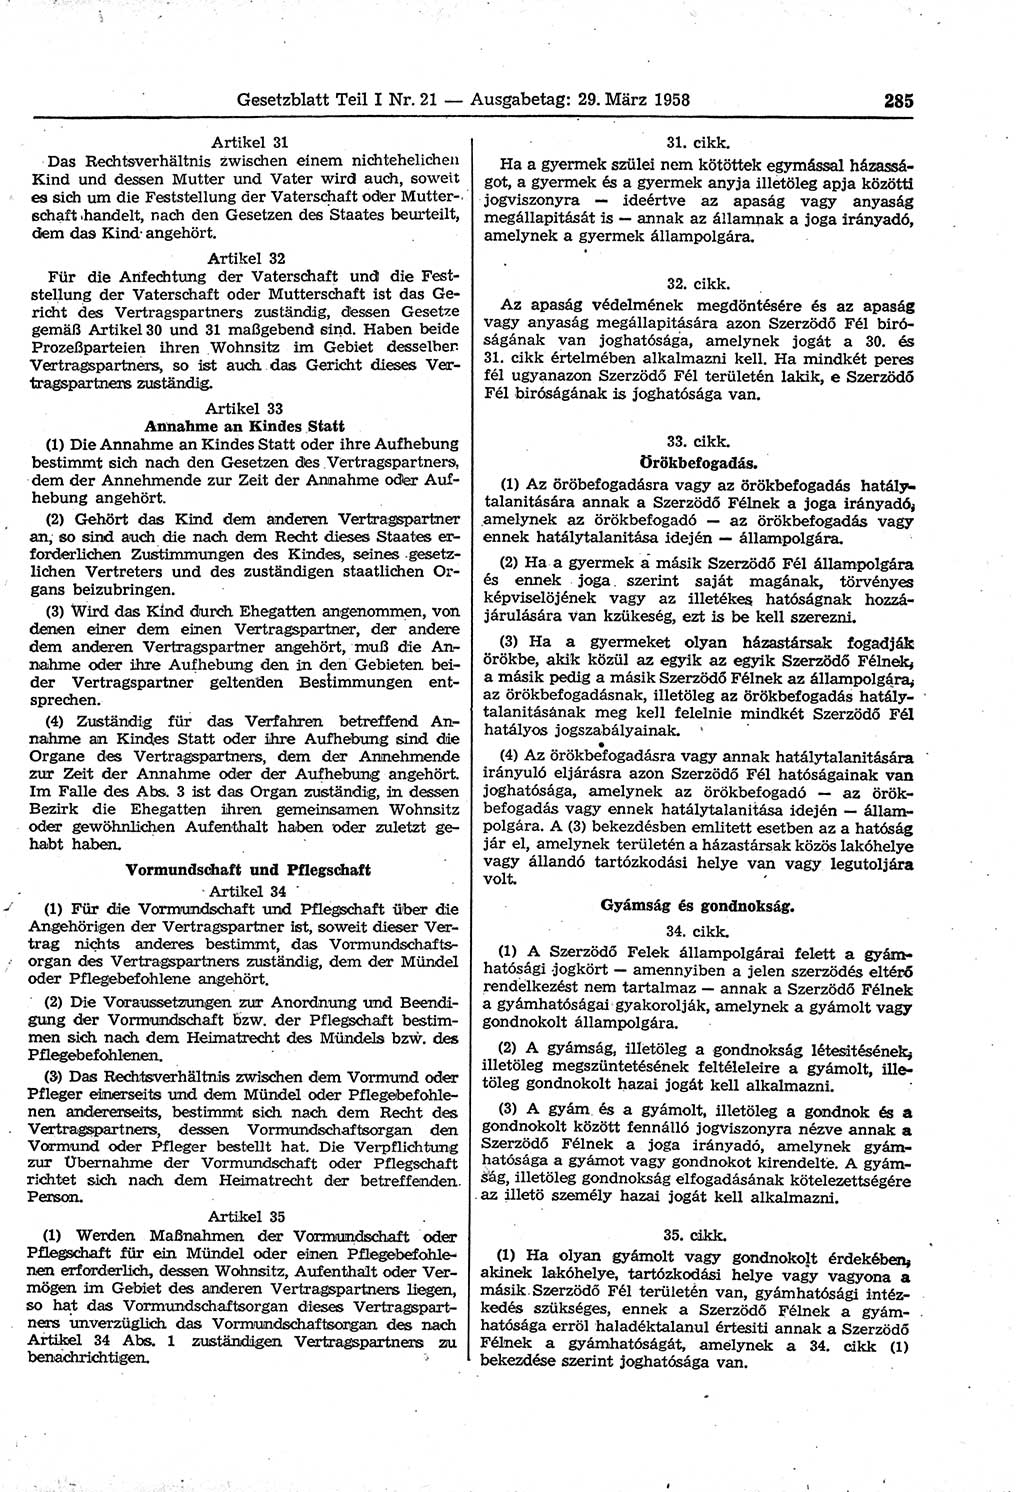 Gesetzblatt (GBl.) der Deutschen Demokratischen Republik (DDR) Teil Ⅰ 1958, Seite 285 (GBl. DDR Ⅰ 1958, S. 285)